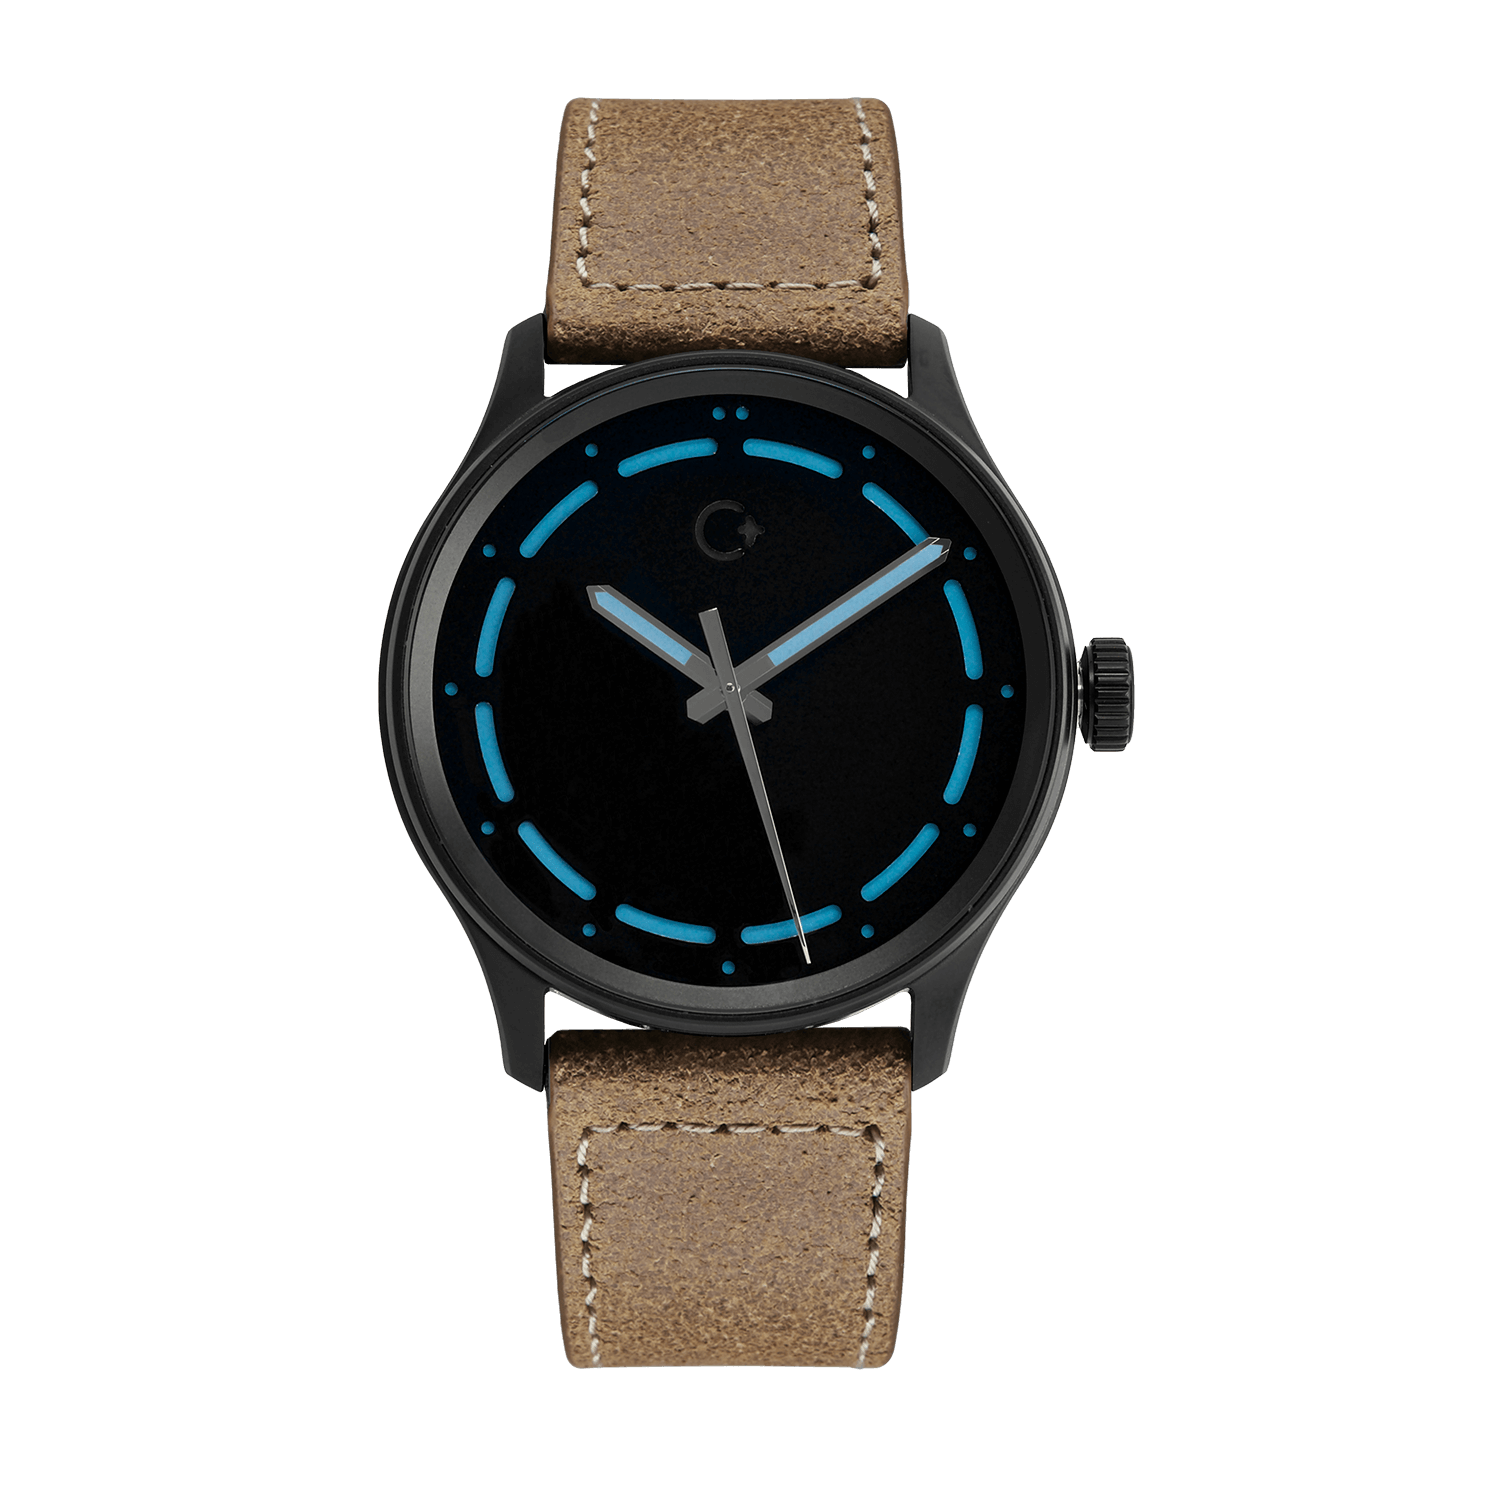 DLC NanoBlack hodinky s modrým číselníkem, Chronotechna 2018, přesné a odolné hodinky